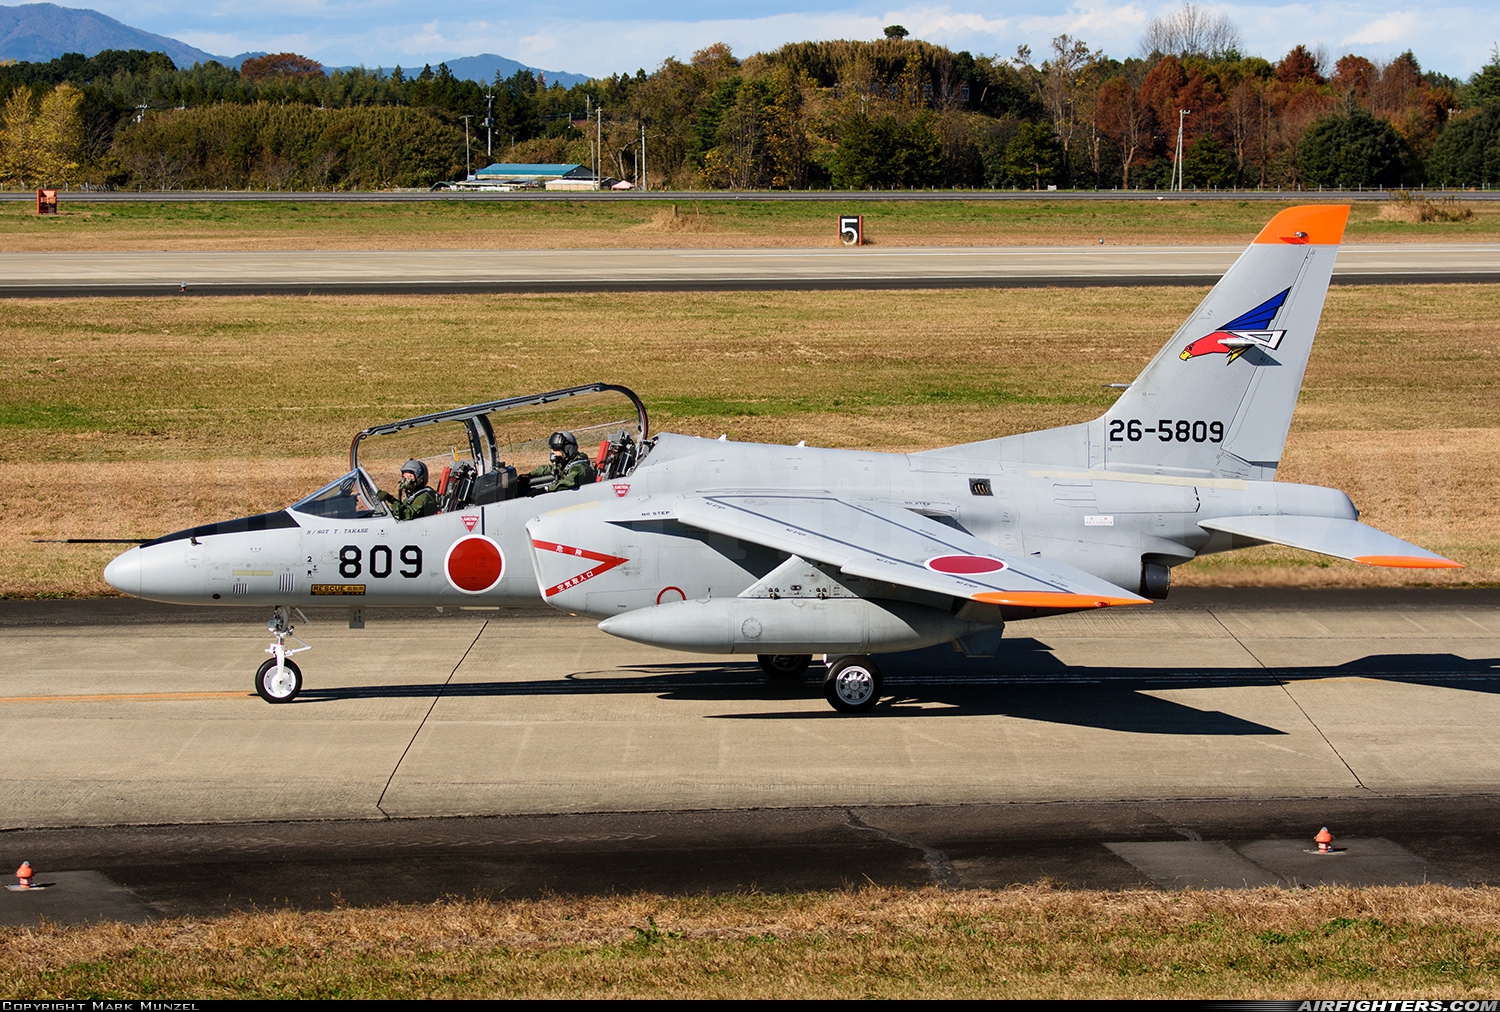 Japan - Air Force Kawasaki T-4 26-5809 at Hyakuri (RJAH), Japan